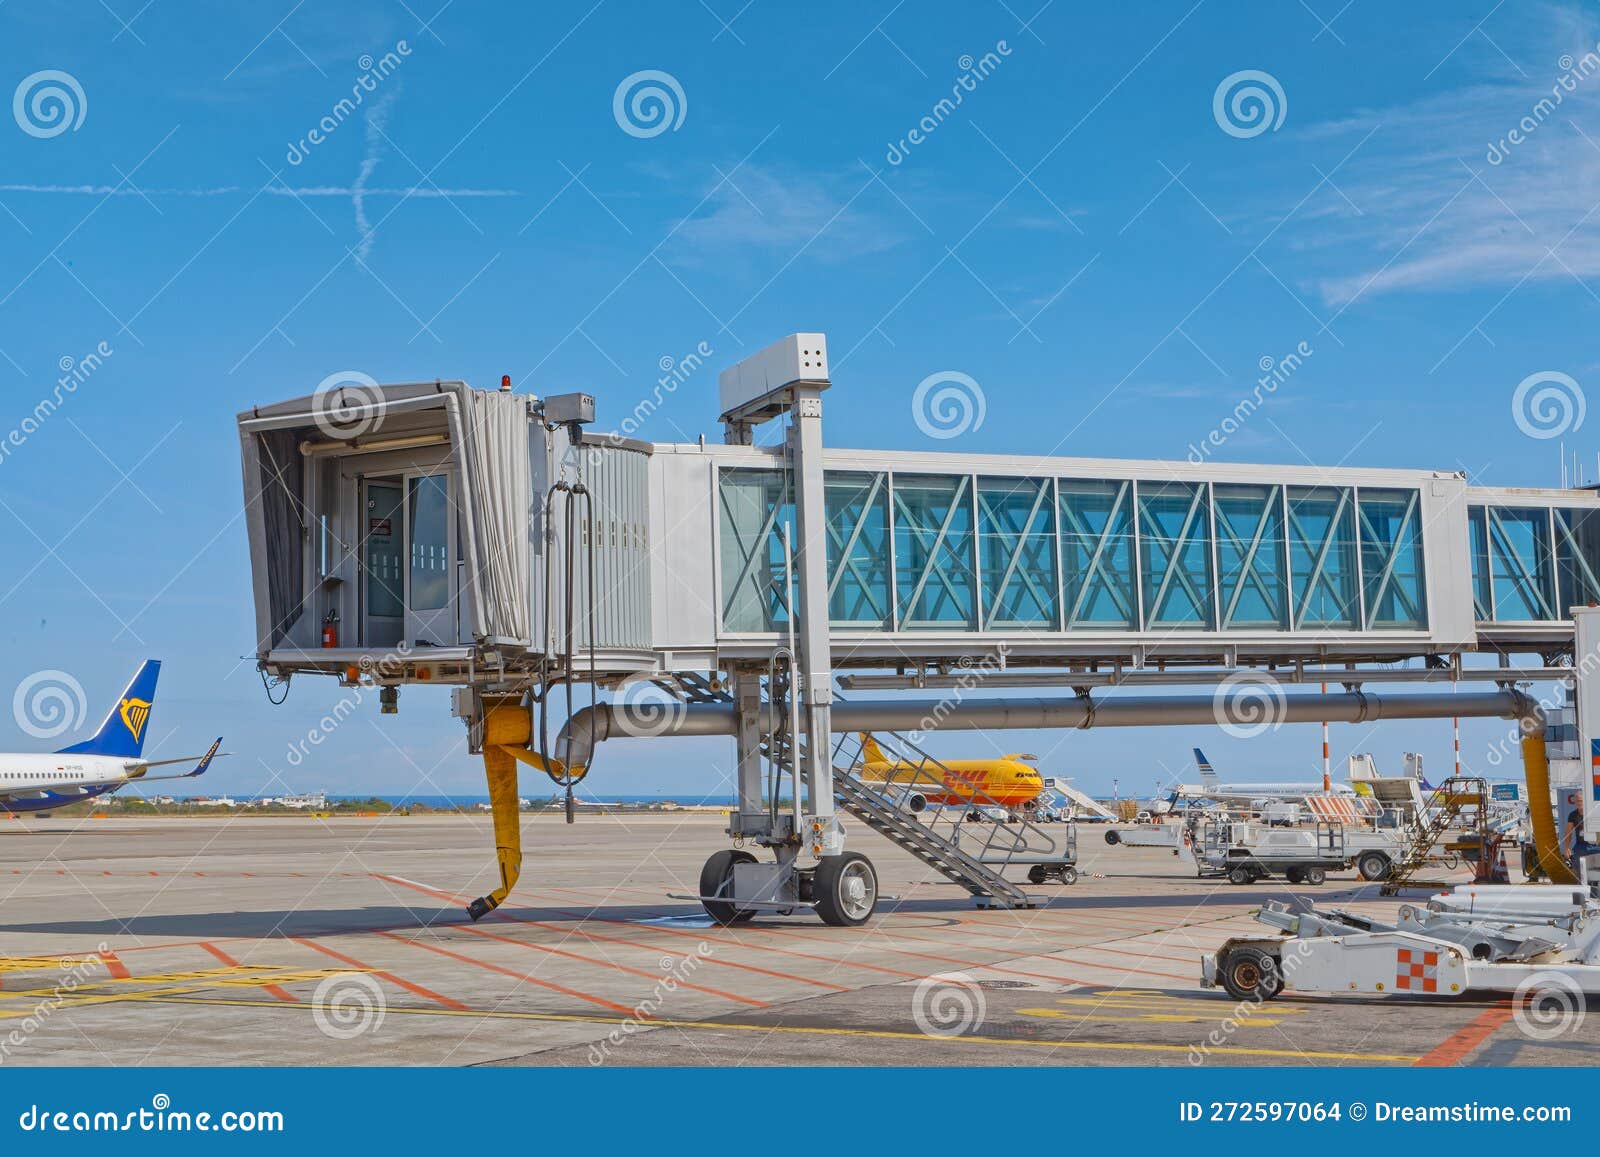 Passinger Boarding Bridge at the Bari Airport in Italy Editorial Stock ...